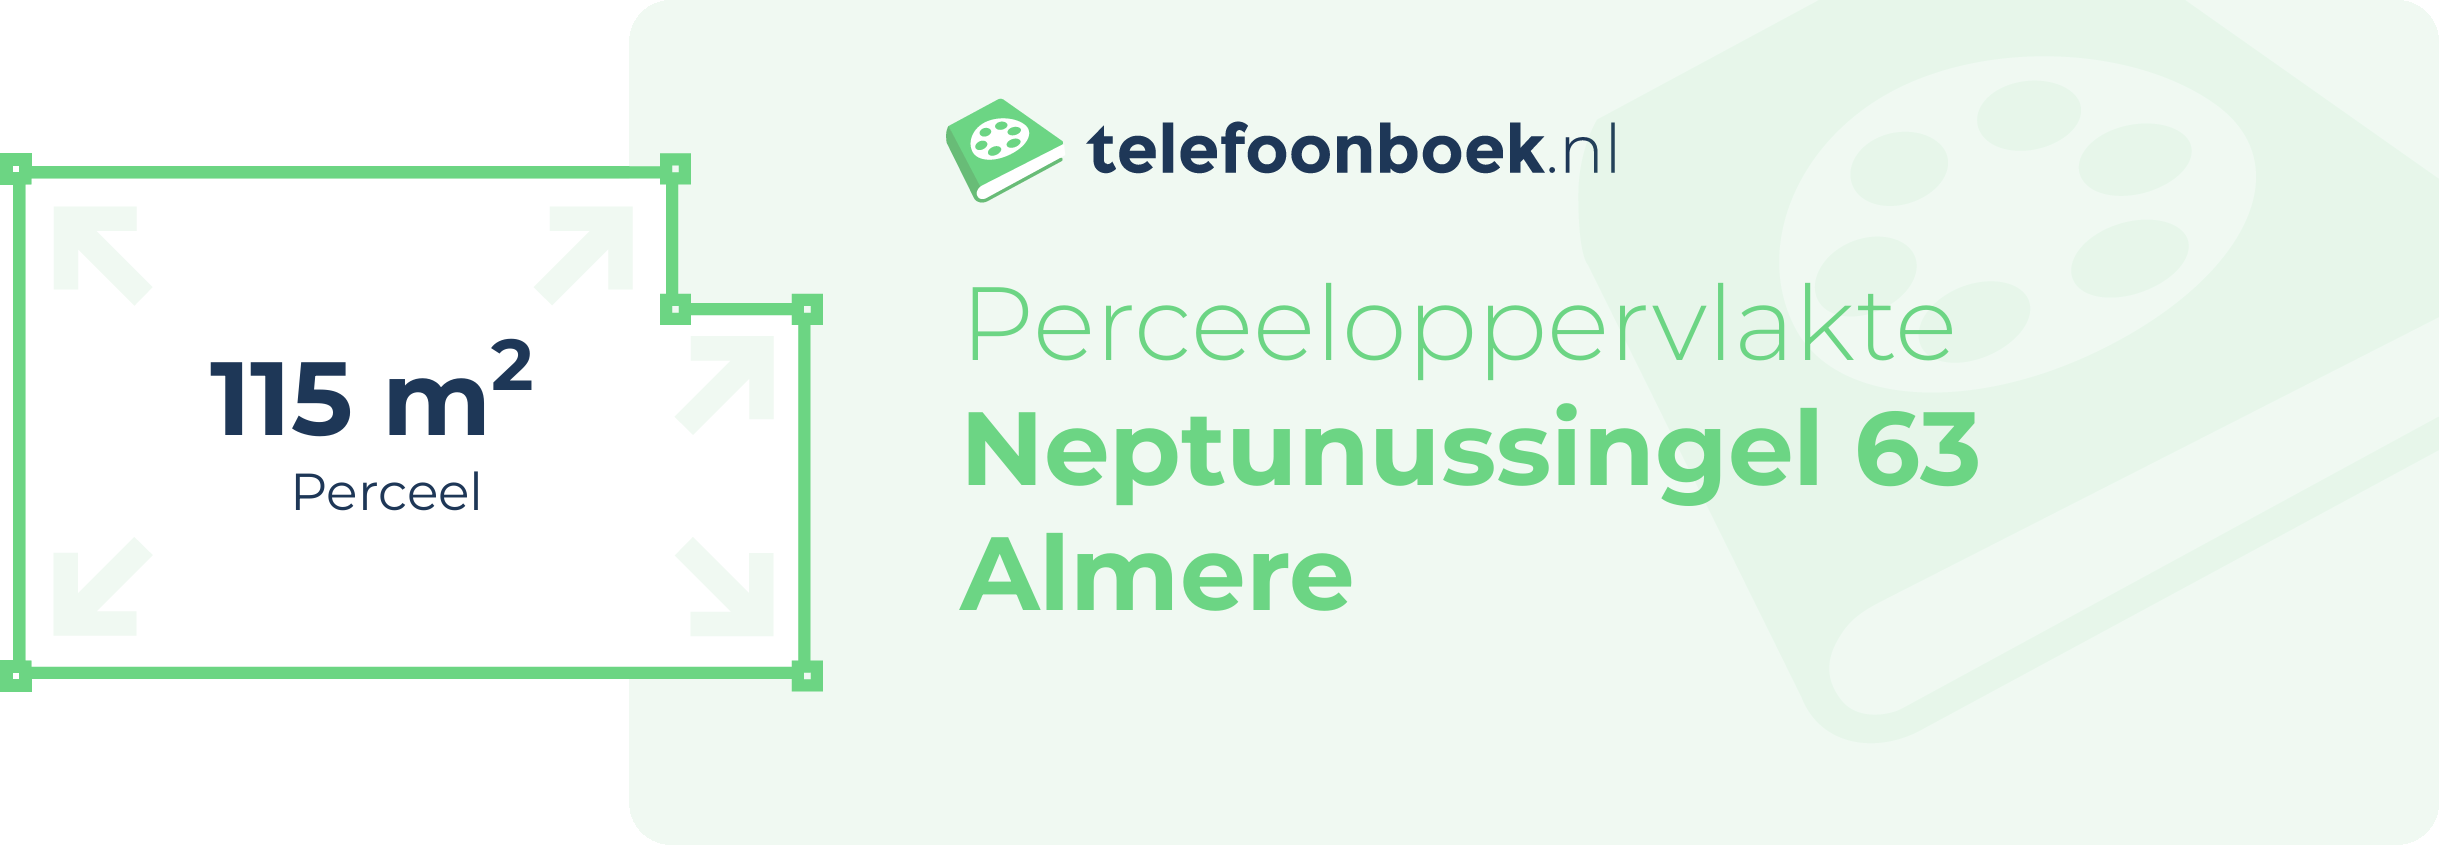 Perceeloppervlakte Neptunussingel 63 Almere